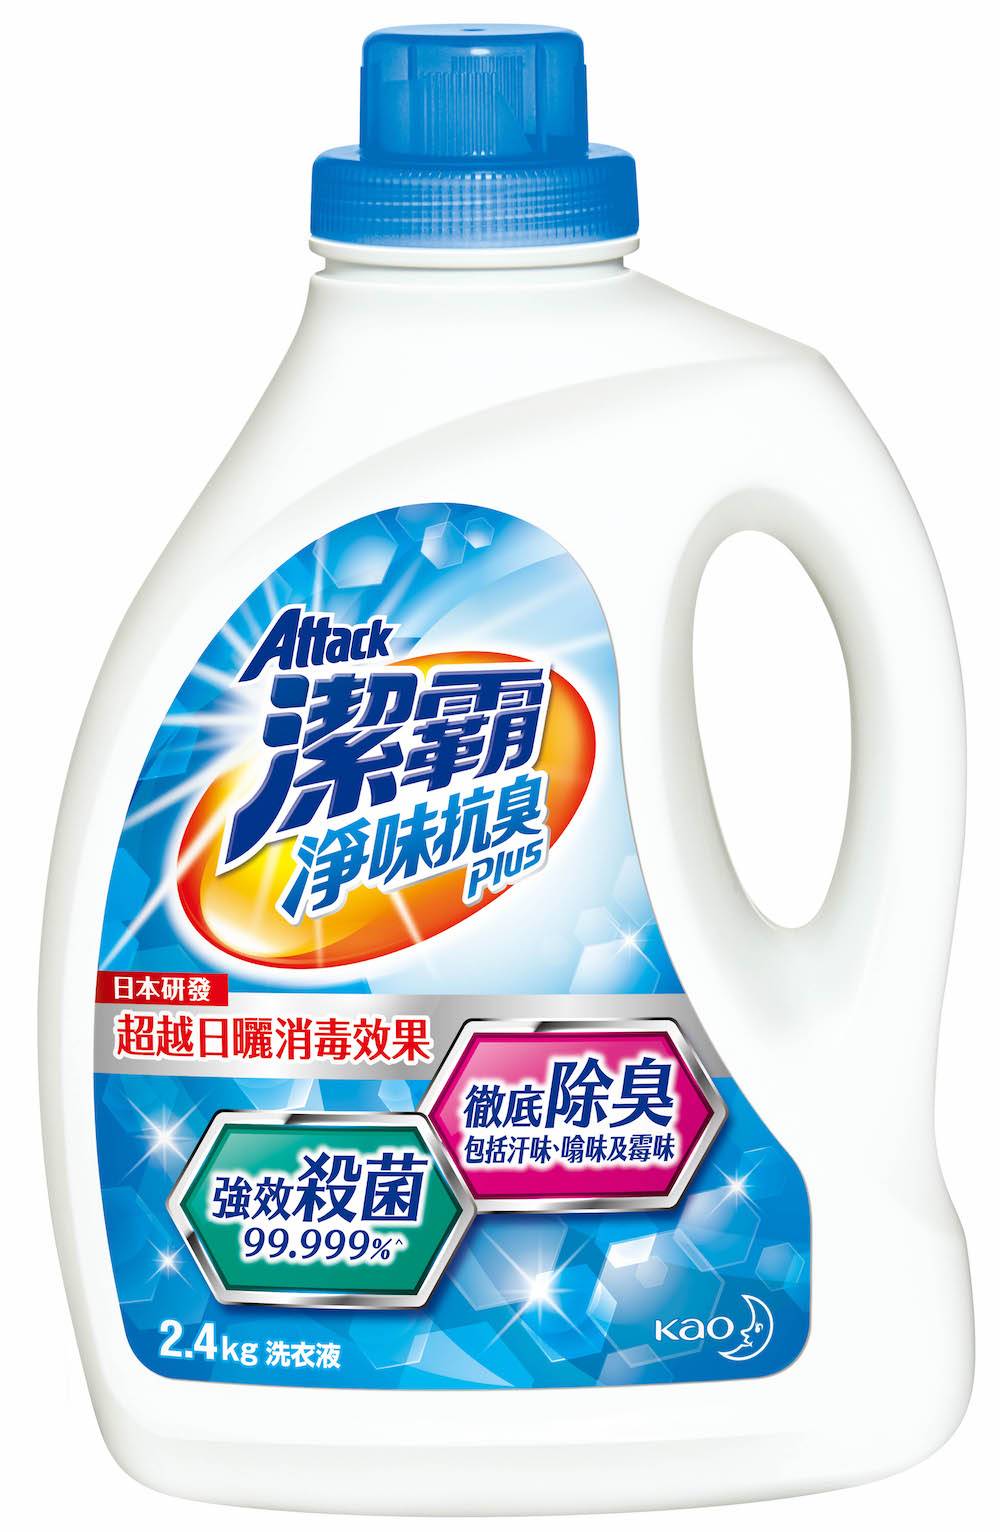 潔霸淨味抗臭Plus洗衣液獨有日本嶄新技術「雙效抗臭力 」，有效殺菌及抗菌達99.999%，同時抑制細菌滋生，徹底去除衣物不同臭味。